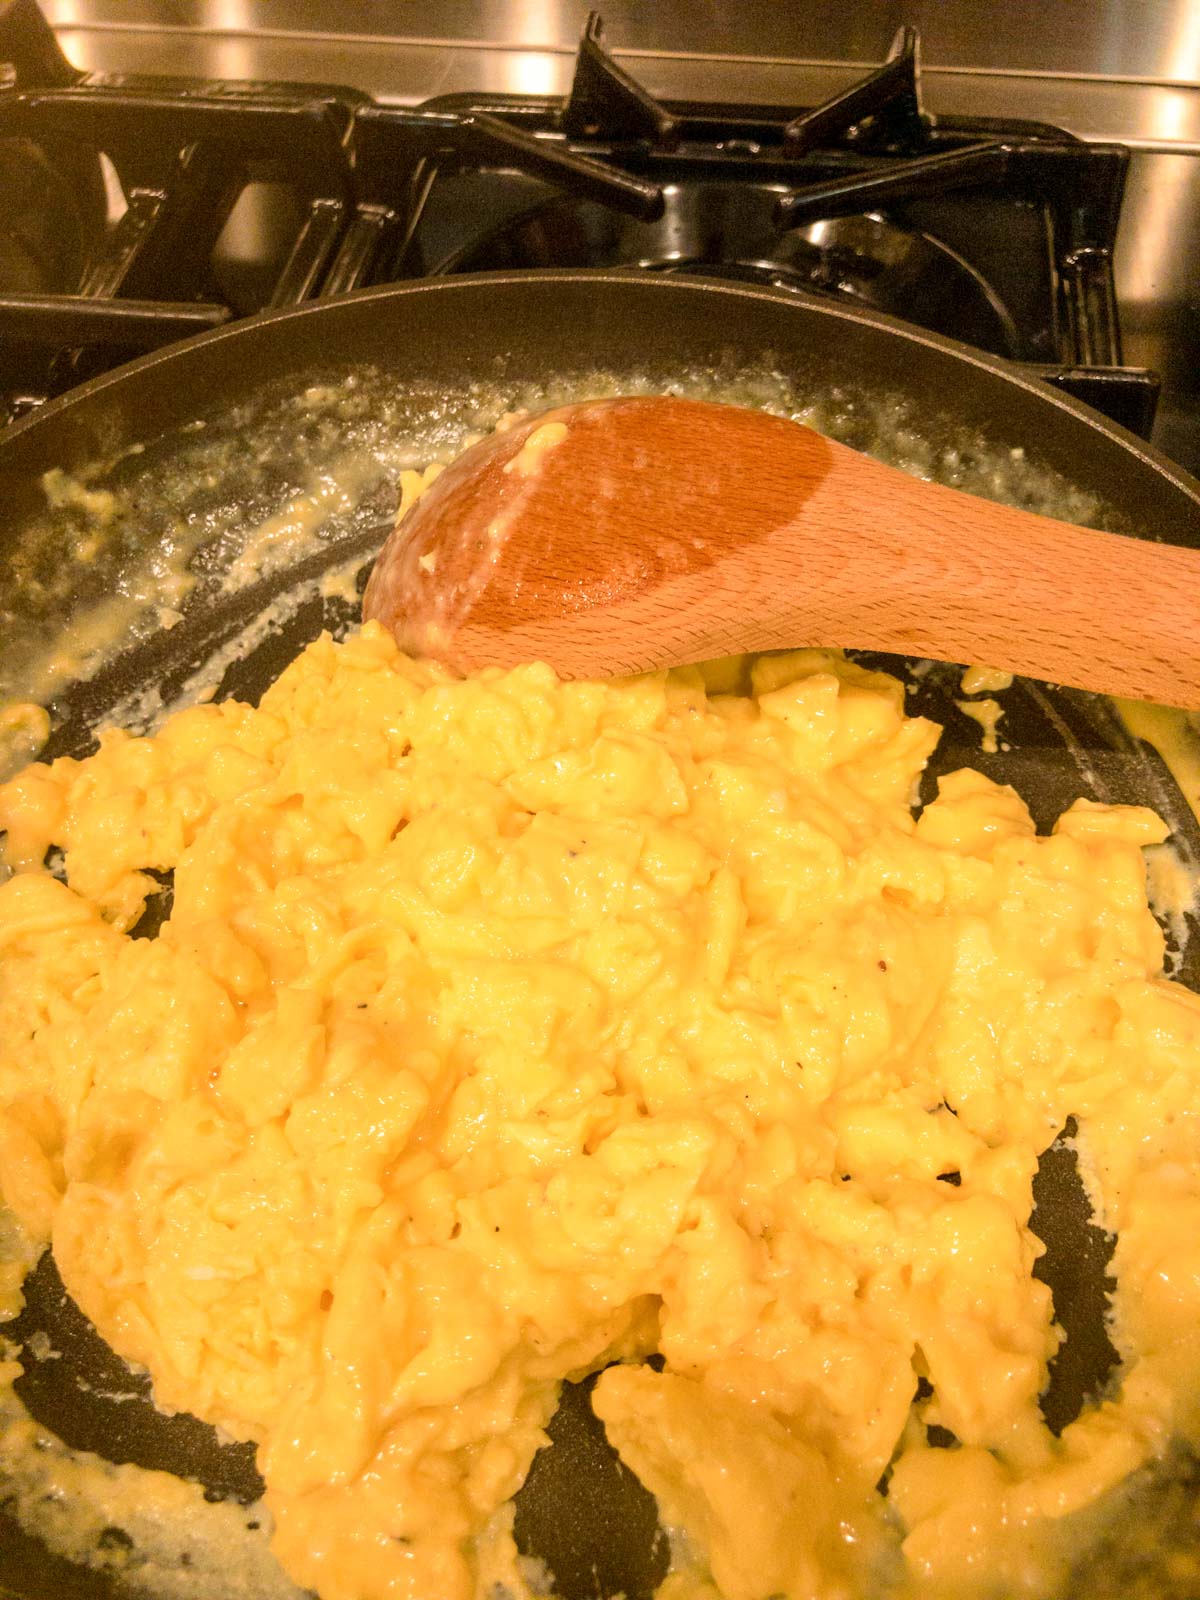 Scrambled eggs in a skillet